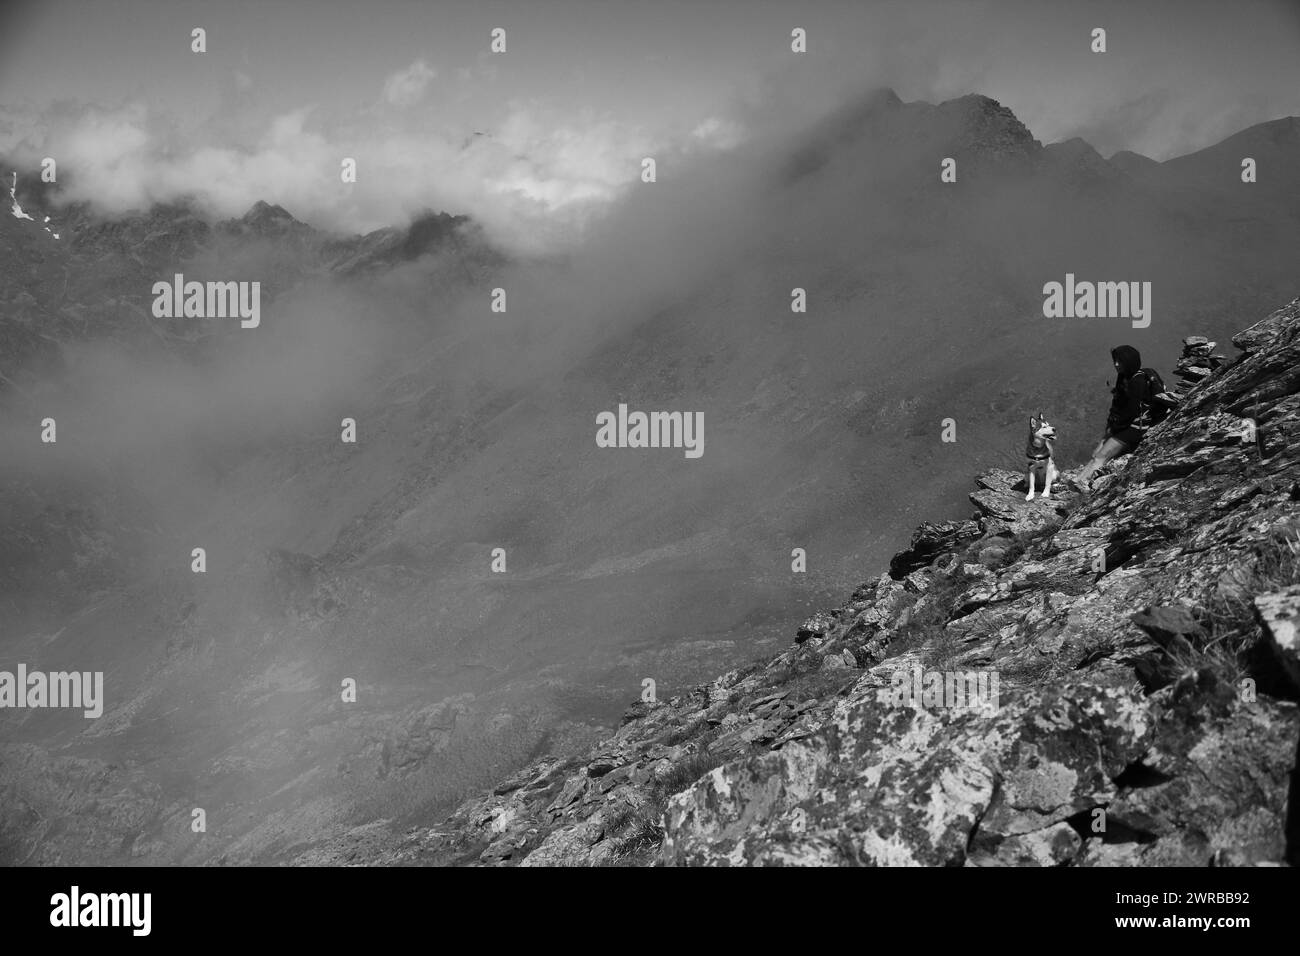 Un chien isolé sur un rebord de montagne rocheux en noir et blanc dans des conditions brumeuses, chiens étonnants dans la nature Banque D'Images